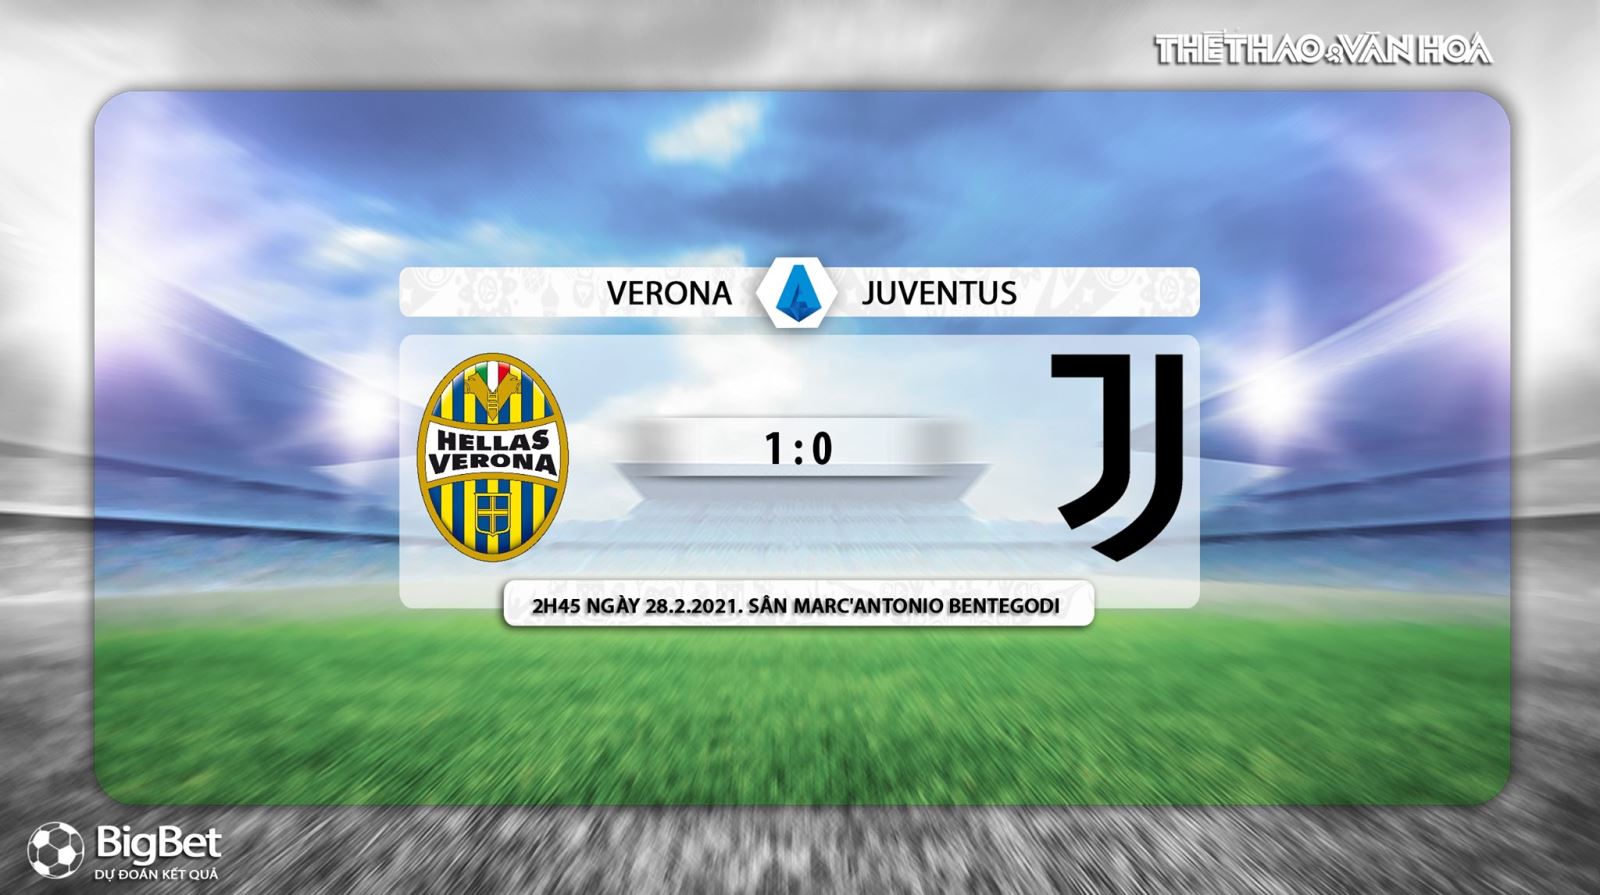 Keo nha cai, Nhận định kết quả, Verona vs Juventus, Trực tiếp bóng đá Italia hôm nay, FPT Play, nhận định bóng đá bóng đá Verona vs Juventus, trực tiếp bóng đá Serie A, kèo Juventus, FPT